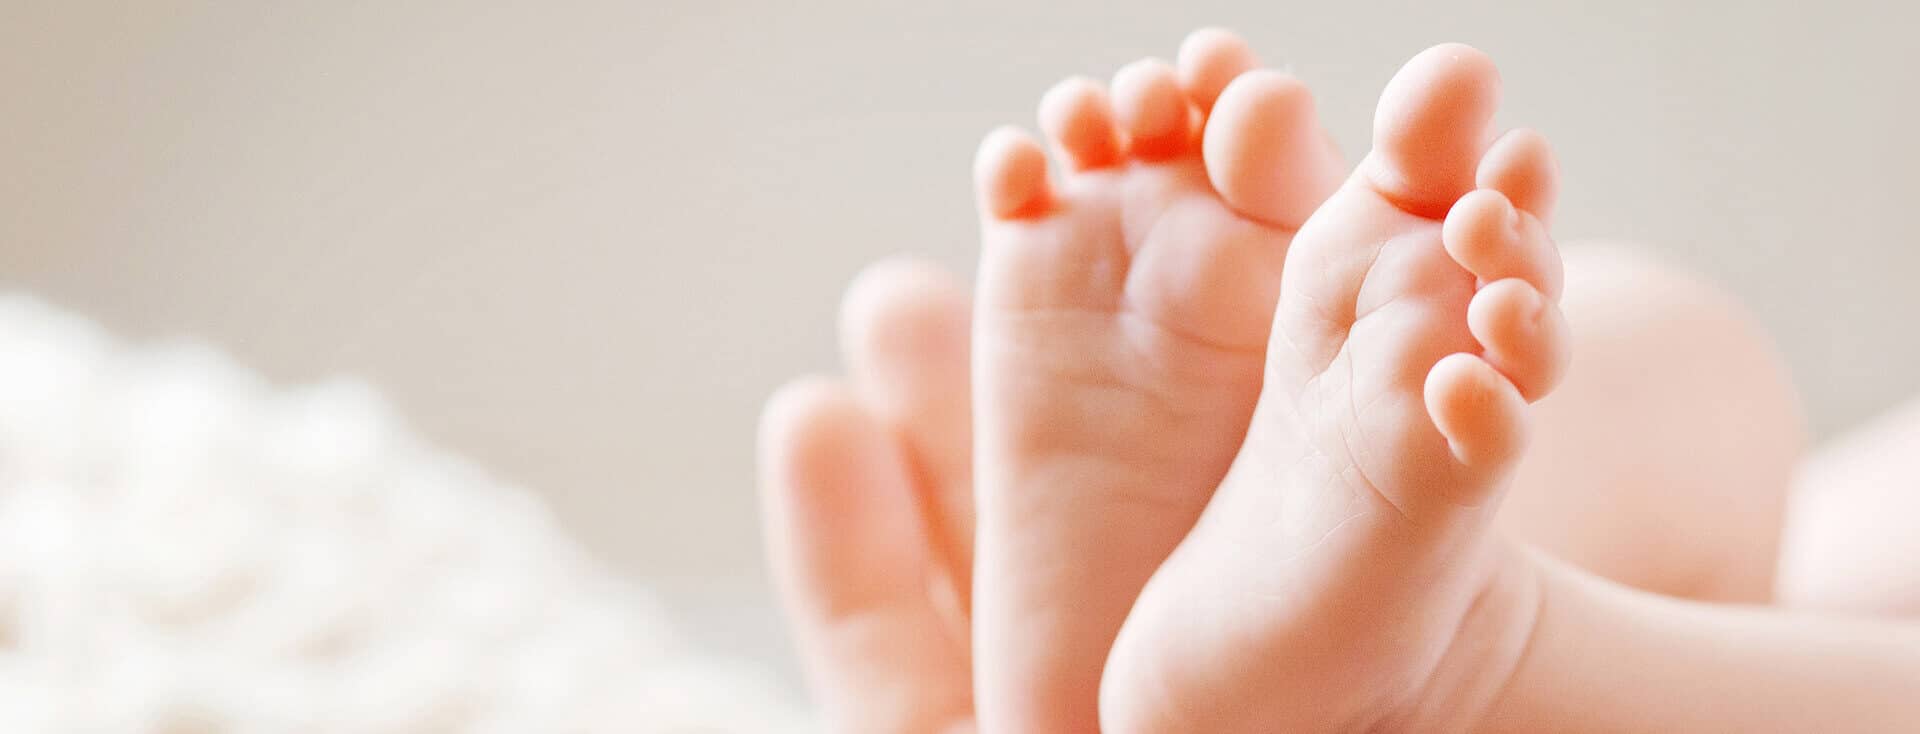 close up nos pezinhos de bebê, fazendo referência ao teste do pezinho